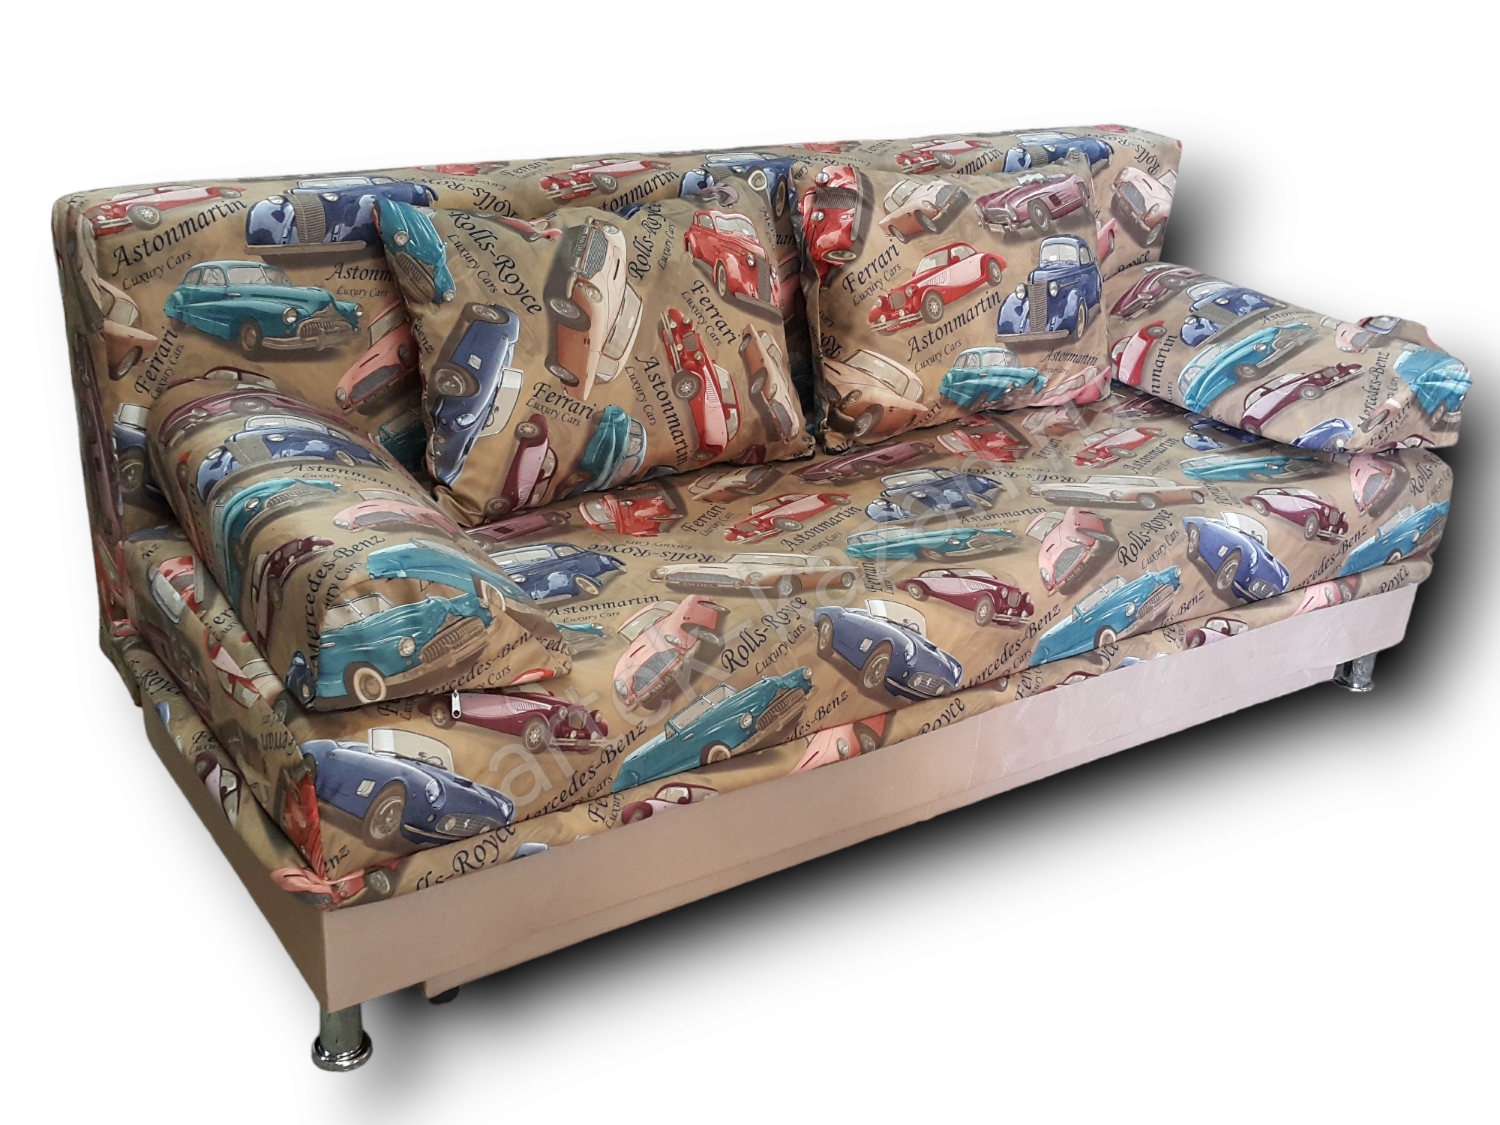 диван еврокнижка Эконом фото № 52. Купить недорогой диван по низкой цене от производителя можно у нас.